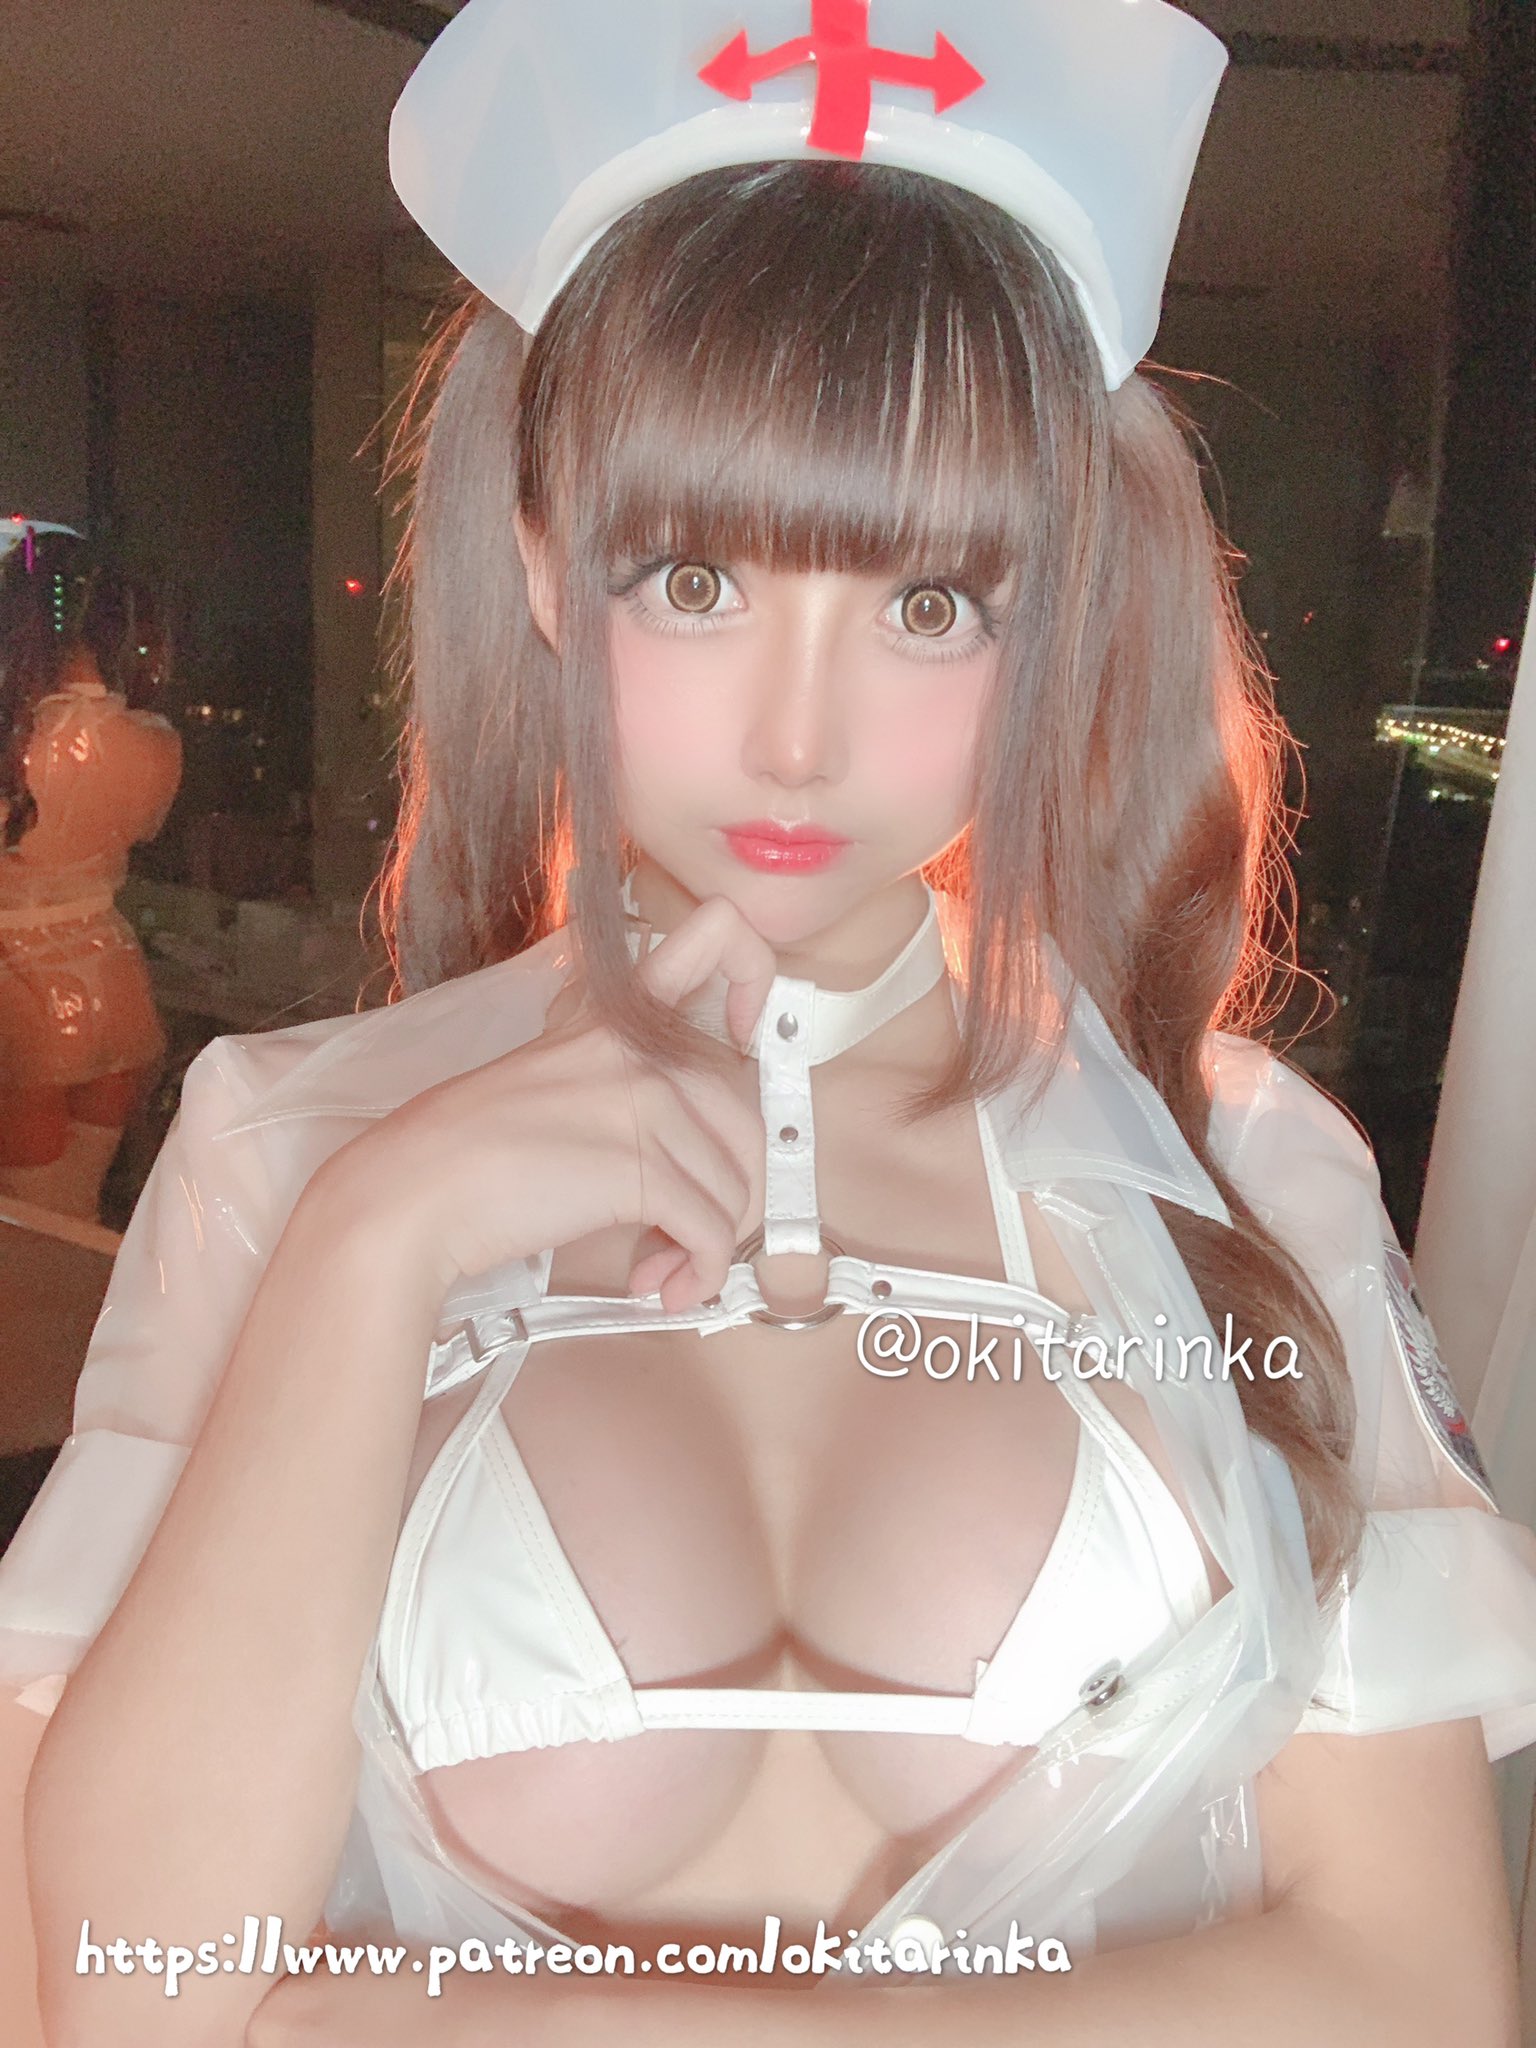 画像,This is patre♡n’s tier5 in June...❤️Maybe sexy nurse is adorable for you (♡˙︶˙♡)…